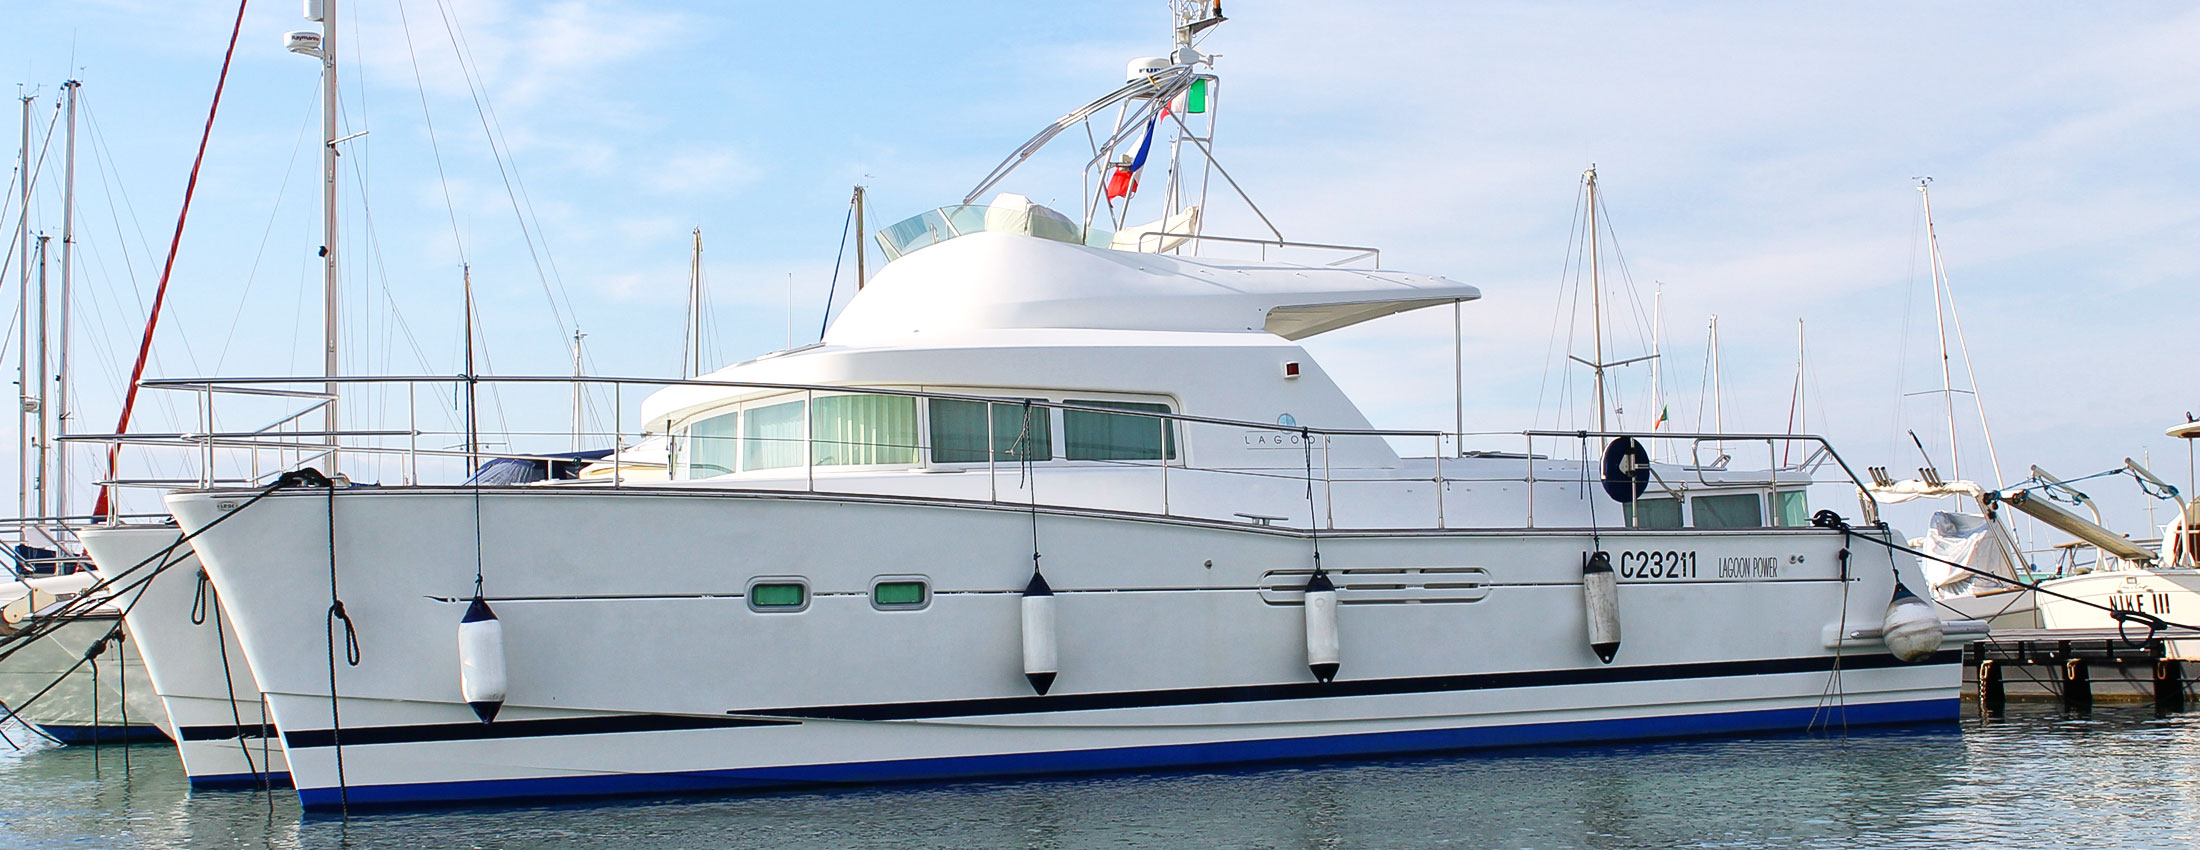 noleggio yacht salento